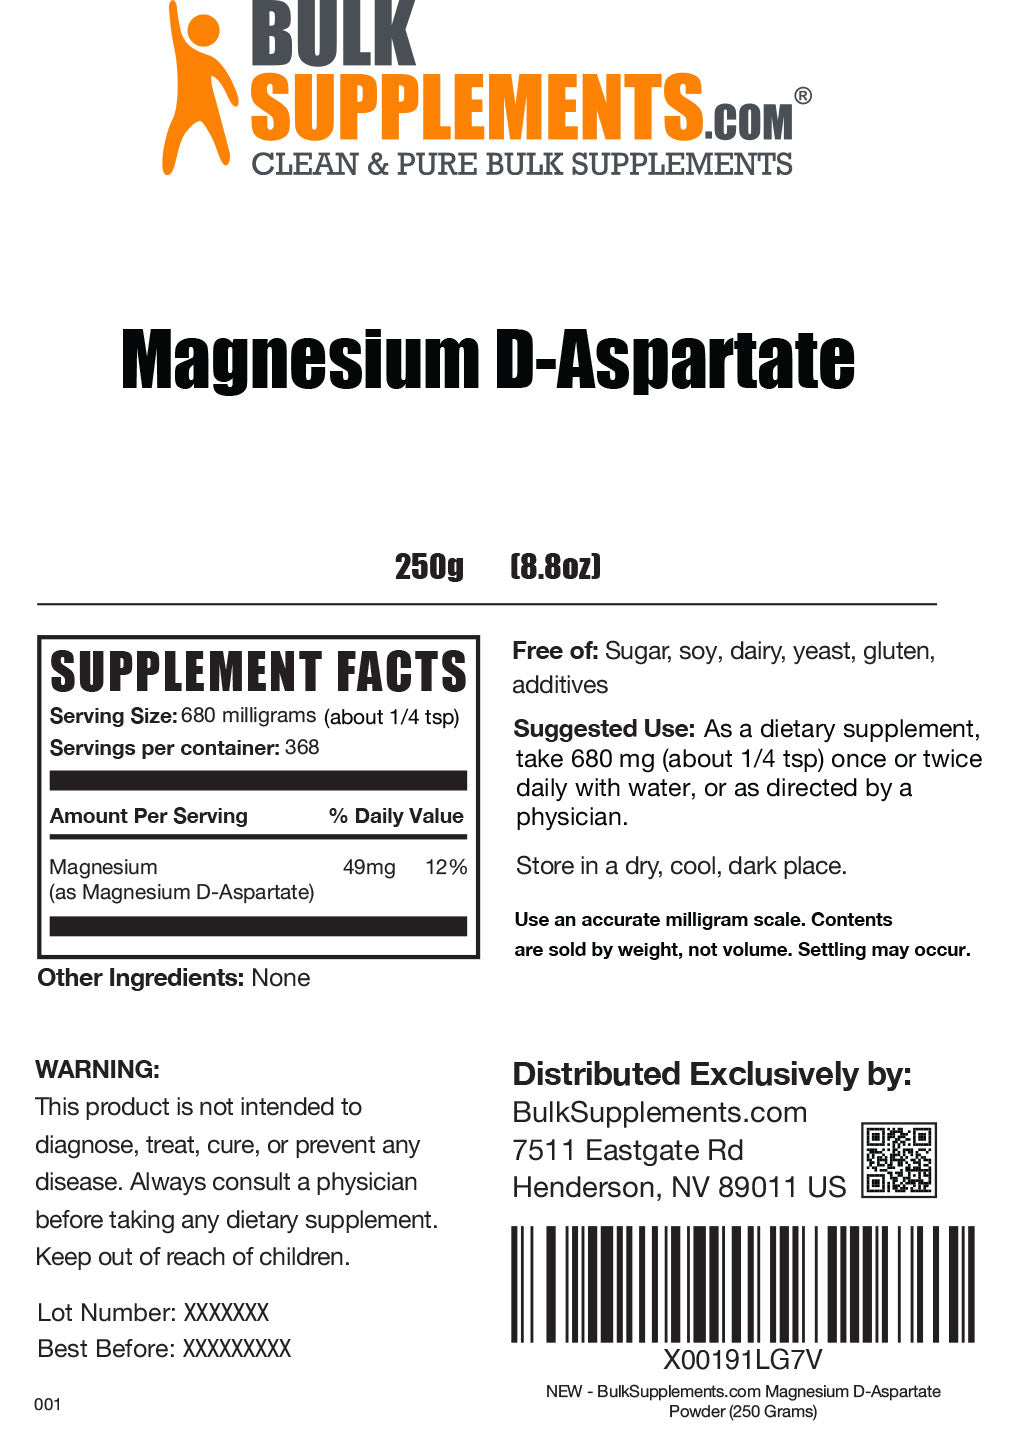 Magnesium D-Aspartate Powder